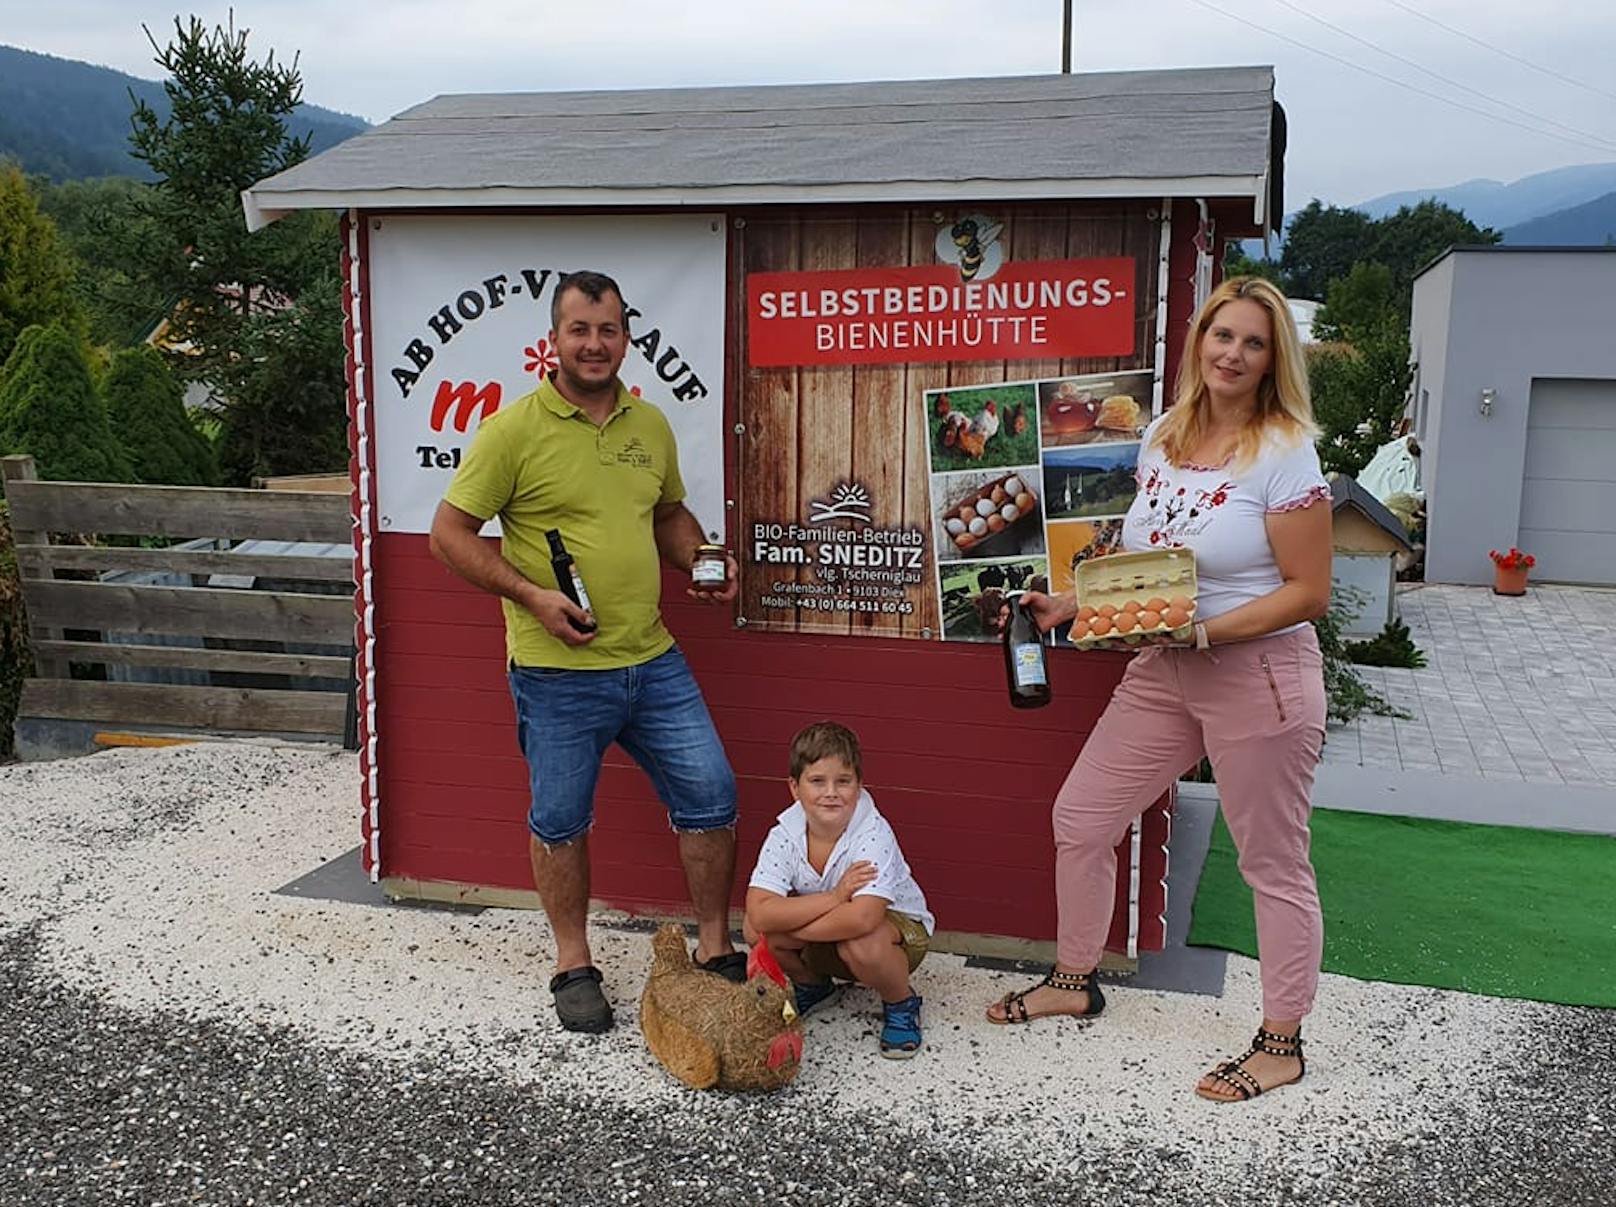 Die Familie verkauft in ihrer Selbstbedienungshütte in Griffen (Kärnten) die Produkte ihres Bauernhofs.